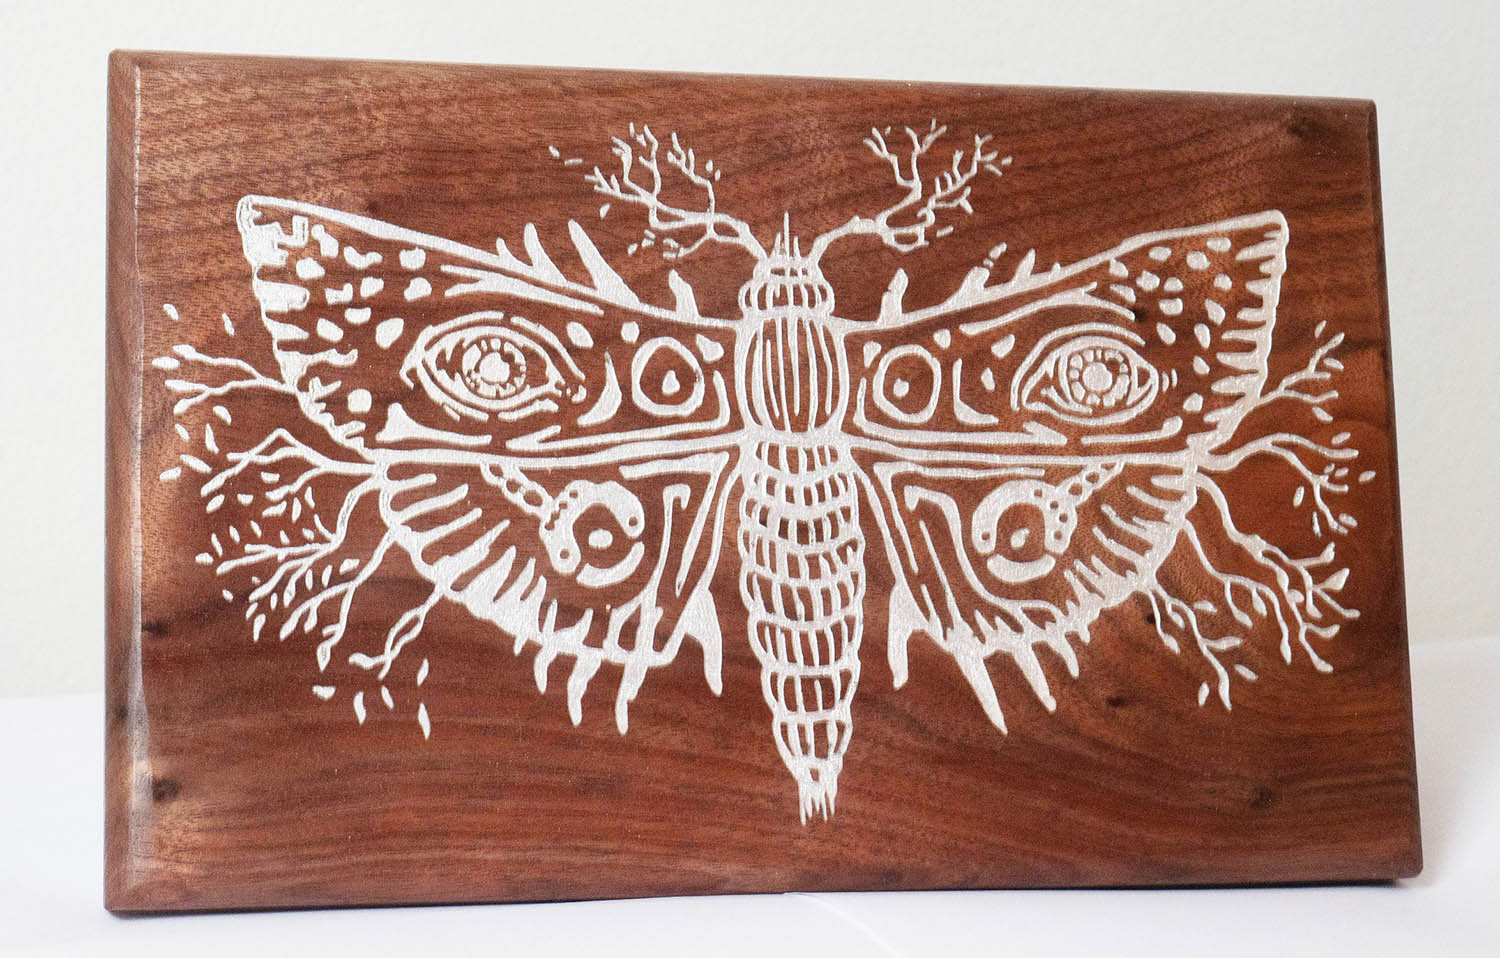 Stephen King Sleeping Beauties Inspired Moth Carving (PREORDER)